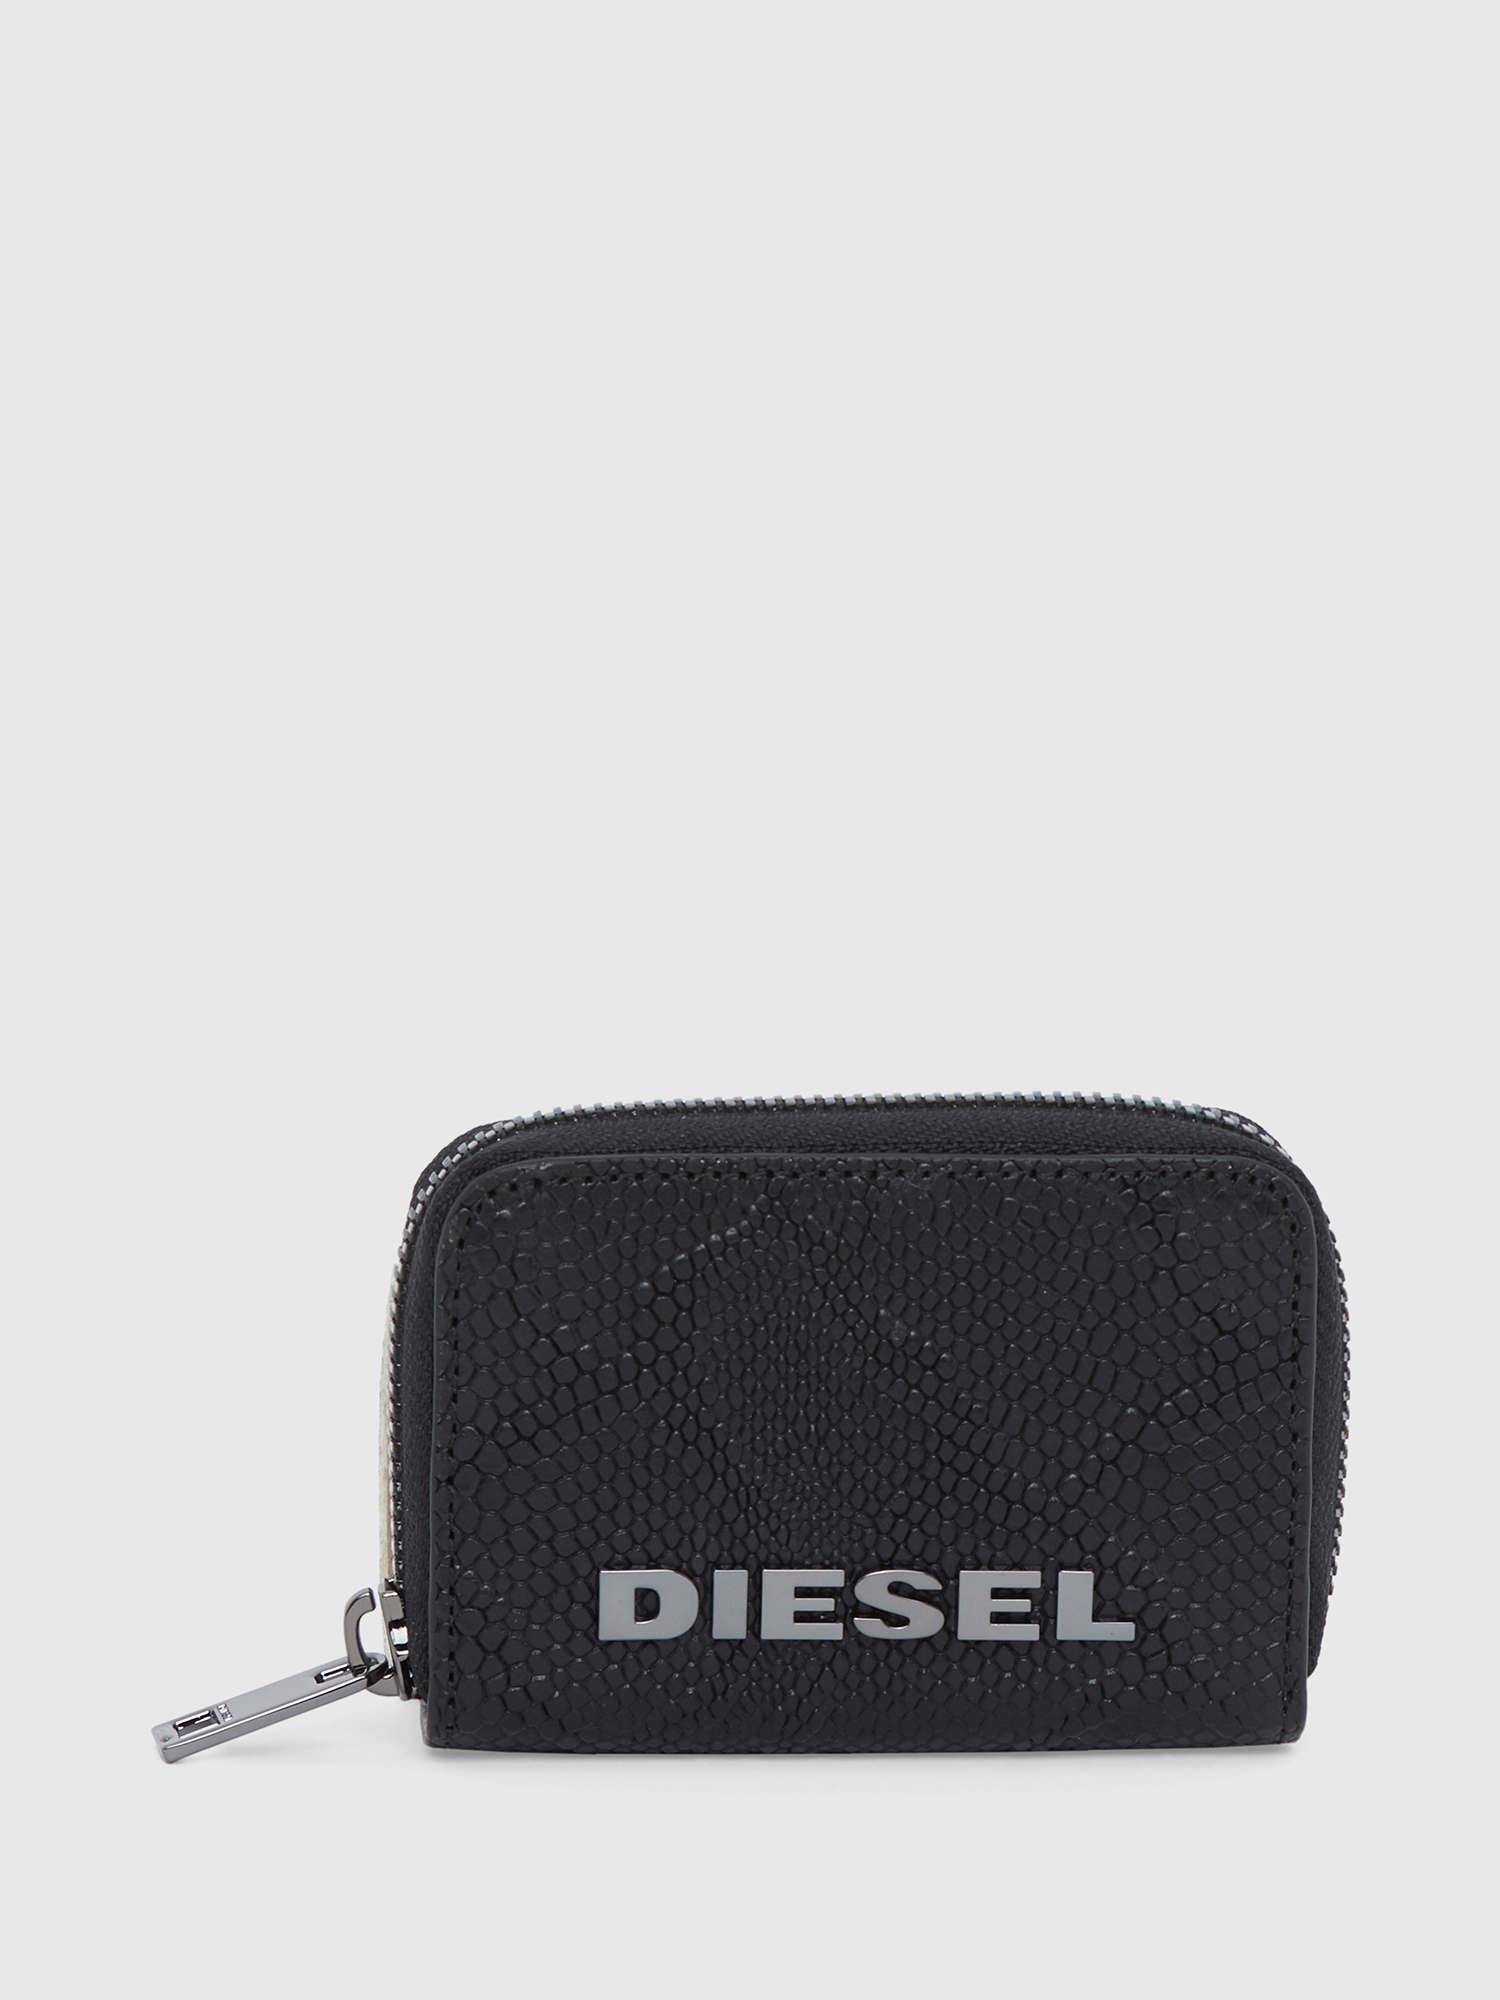 Diesel - JAPAROUND, Black - Image 1